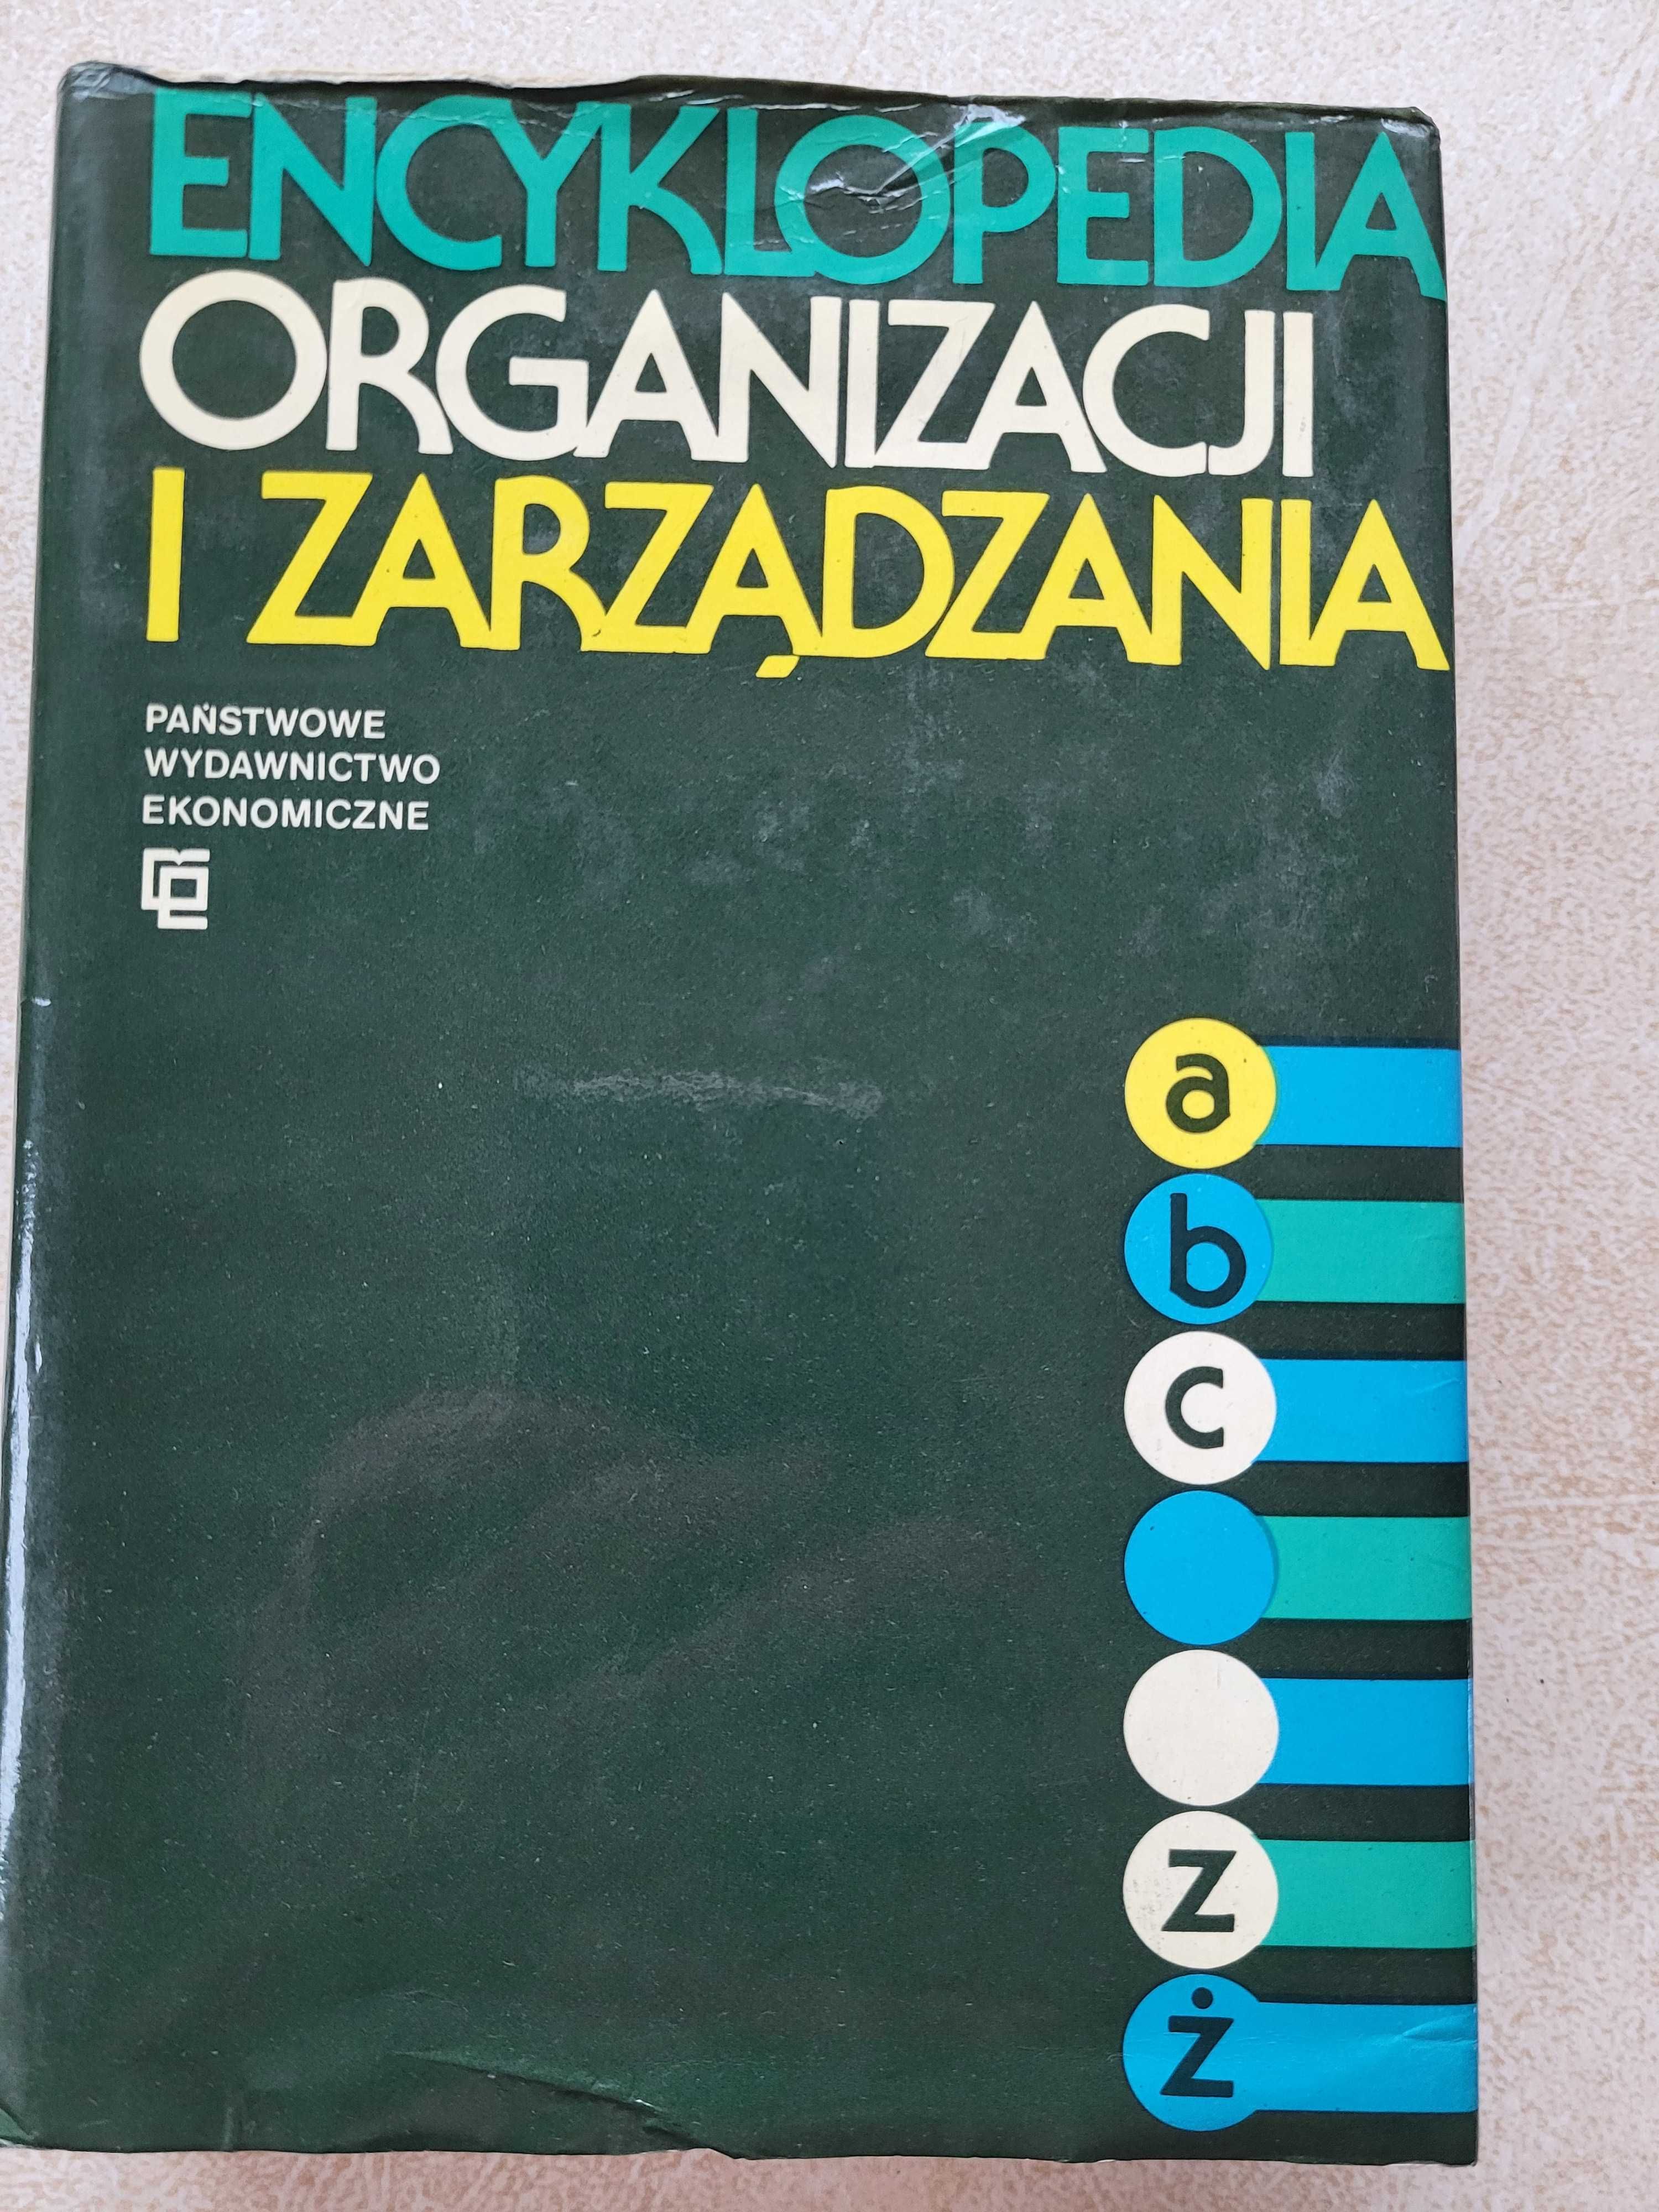 Encyklopedia Organizacji i Zarządzania